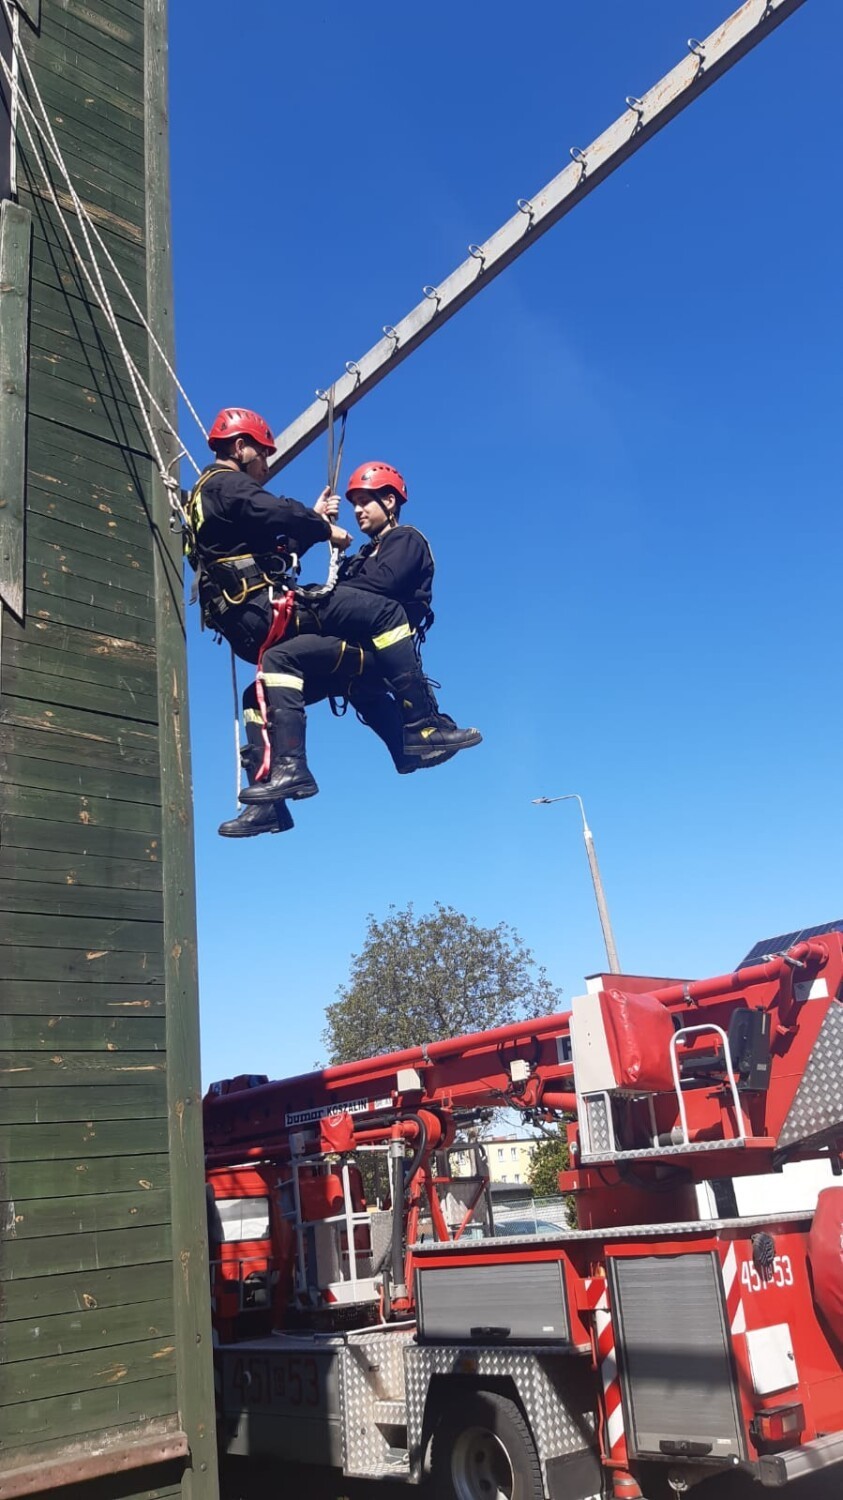 Strażacy z Kościerzyny szkolą się z ratownictwa wysokościowego i technicznego. Zobaczcie zdjęcia, jak działają na wysokości [ZDJĘCIA]